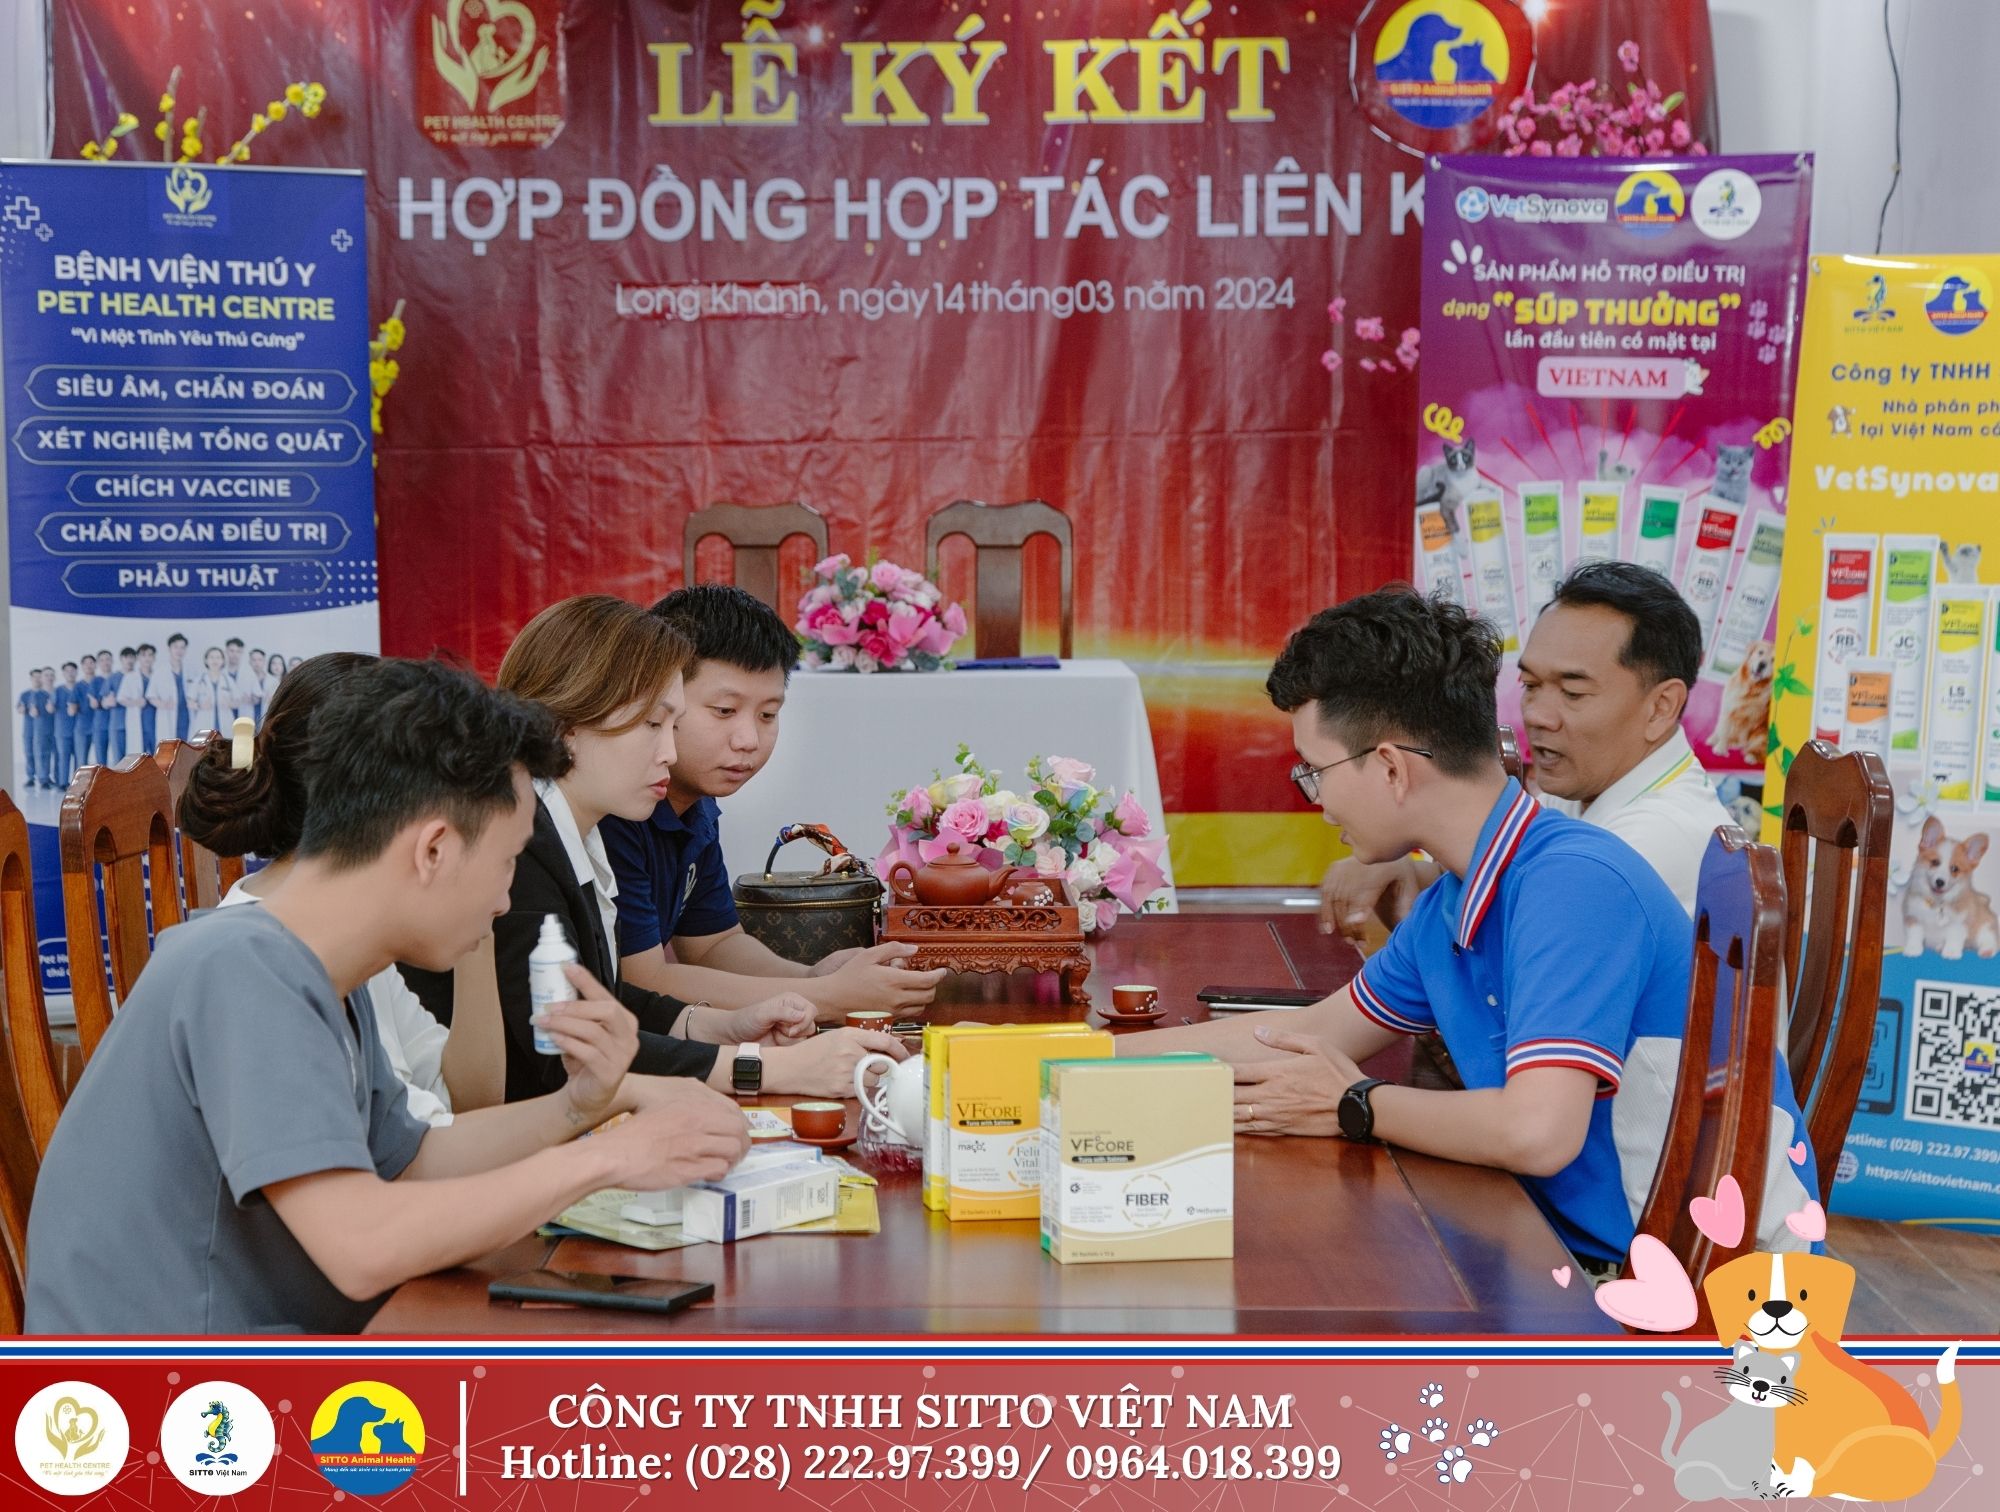 Công ty Sitto Việt Nam đã ký kết hợp tác liên kết với Bệnh viện Thú y Pet Health Centre